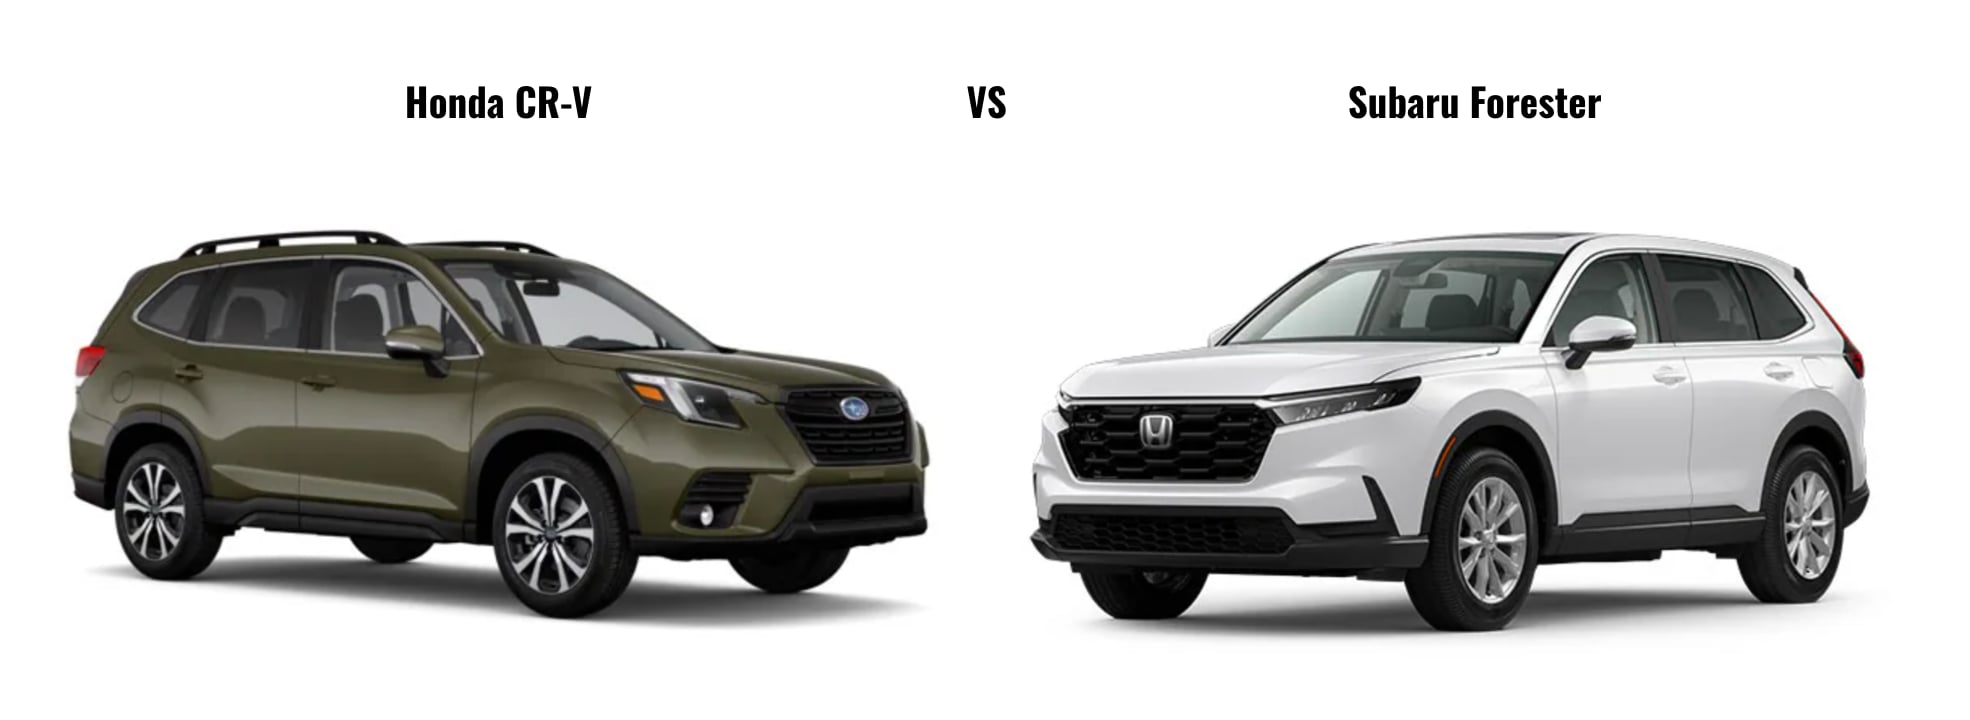 Honda CRV vs Subaru Forester Bryan Honda